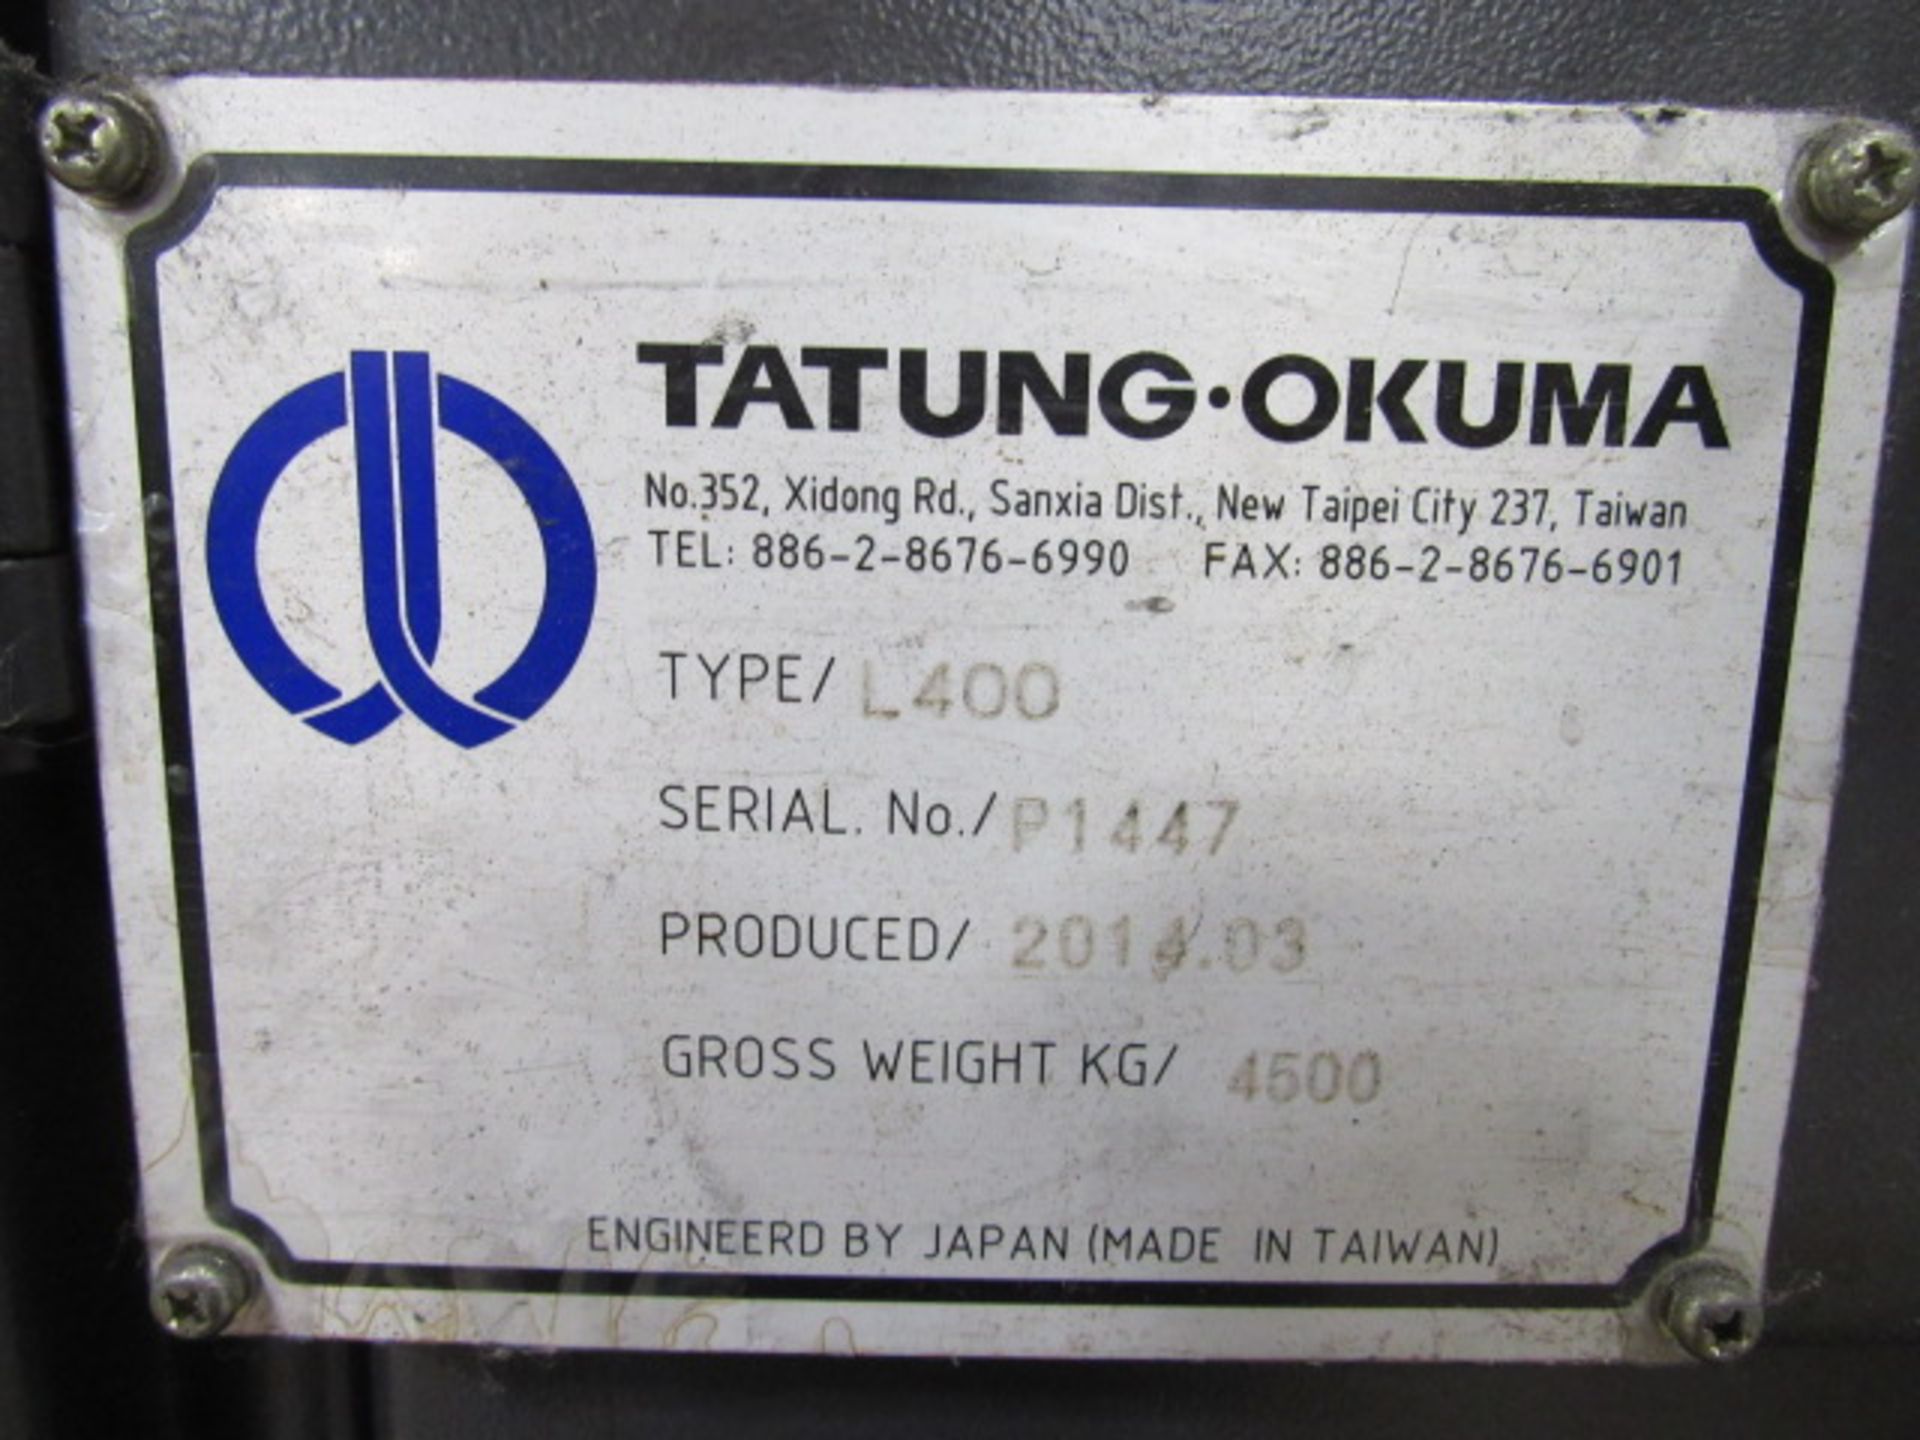 Okuma L400 CNC Turning Center - Image 8 of 8